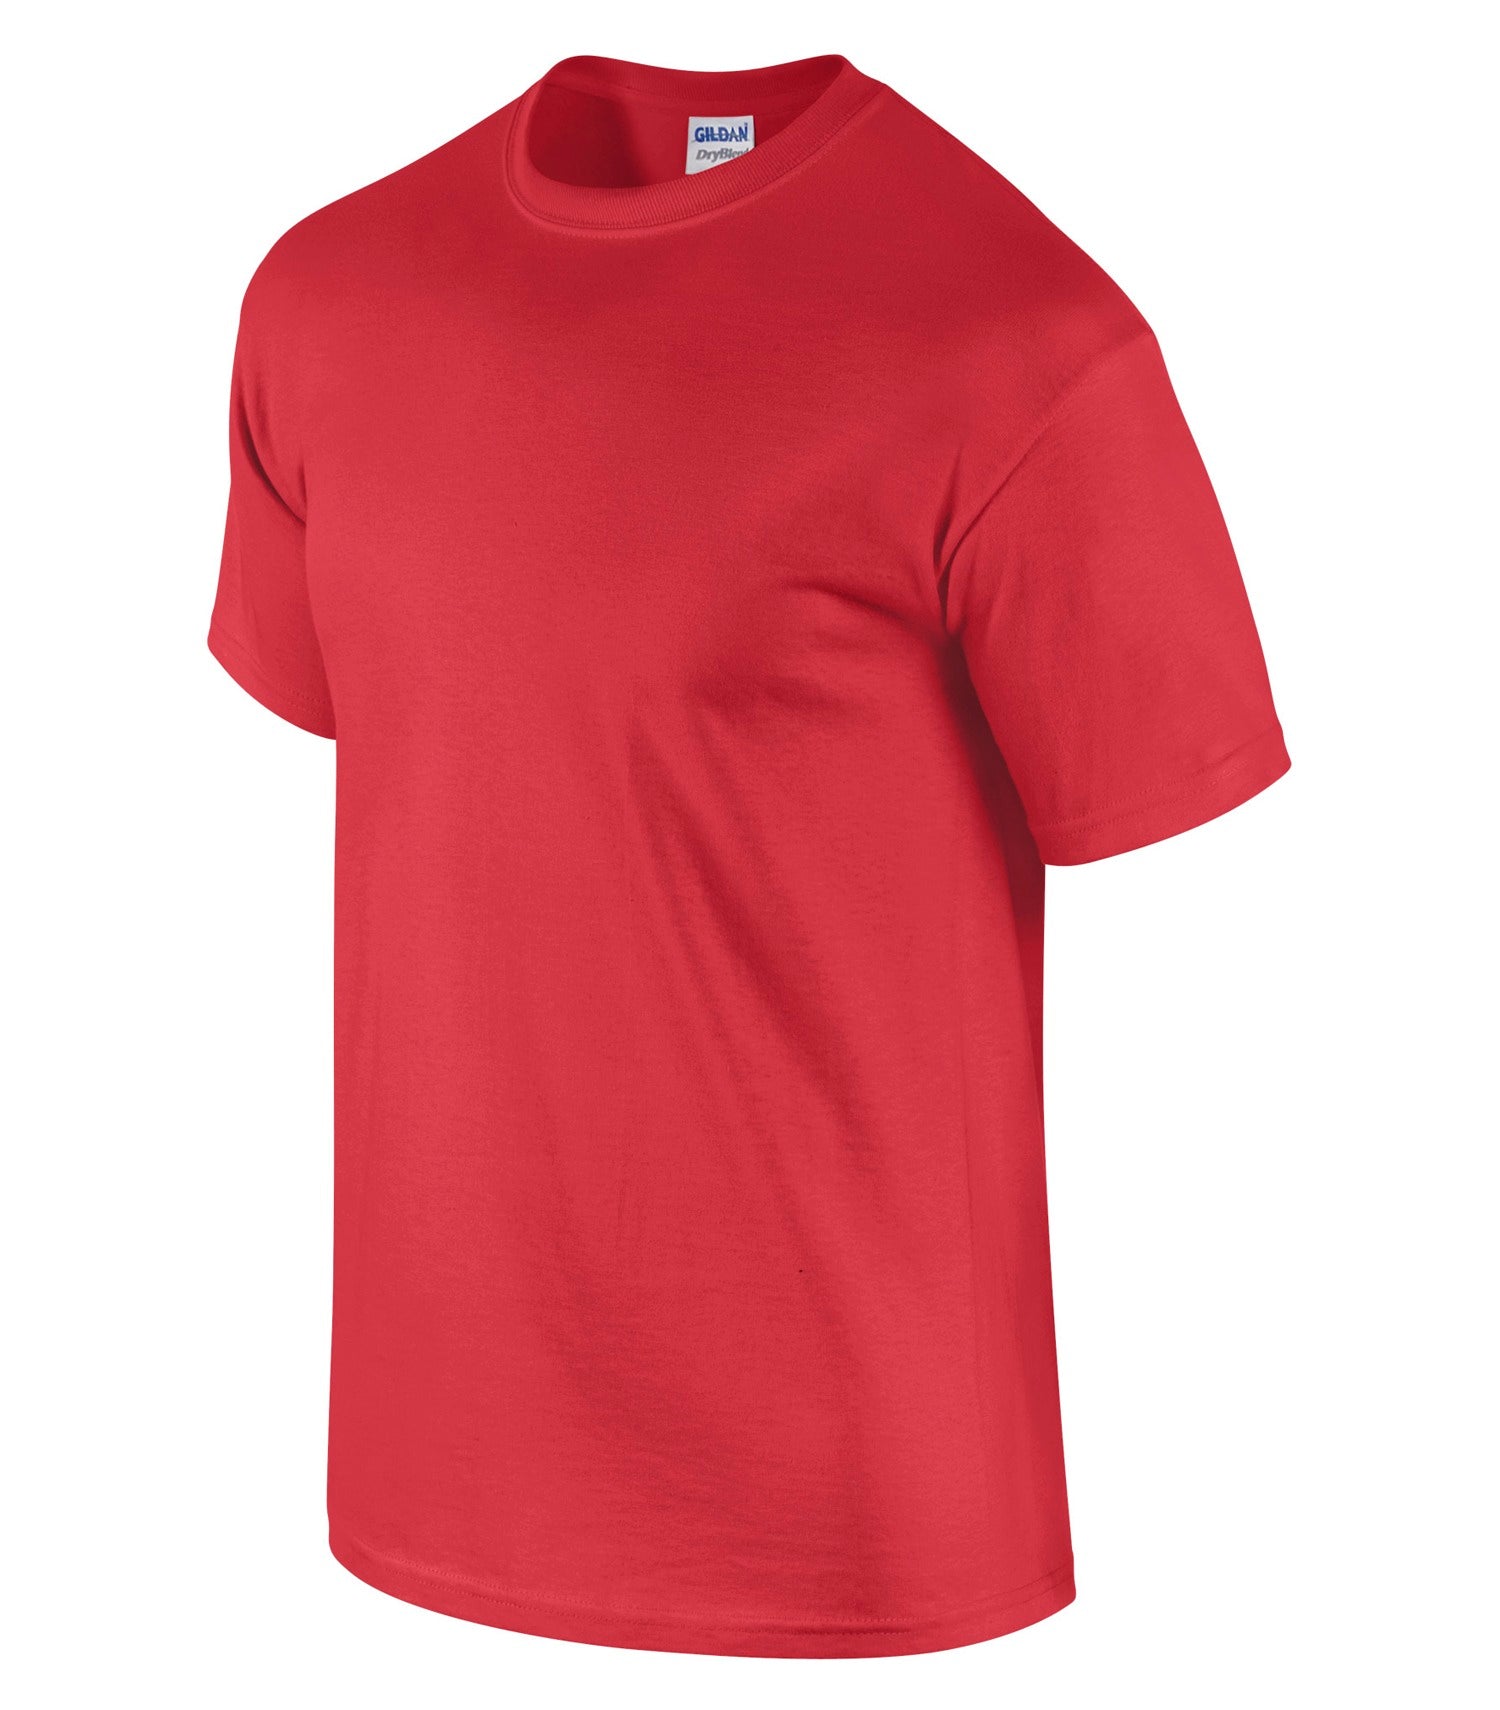 Gildan Dryblend 50/50 T-Shirt